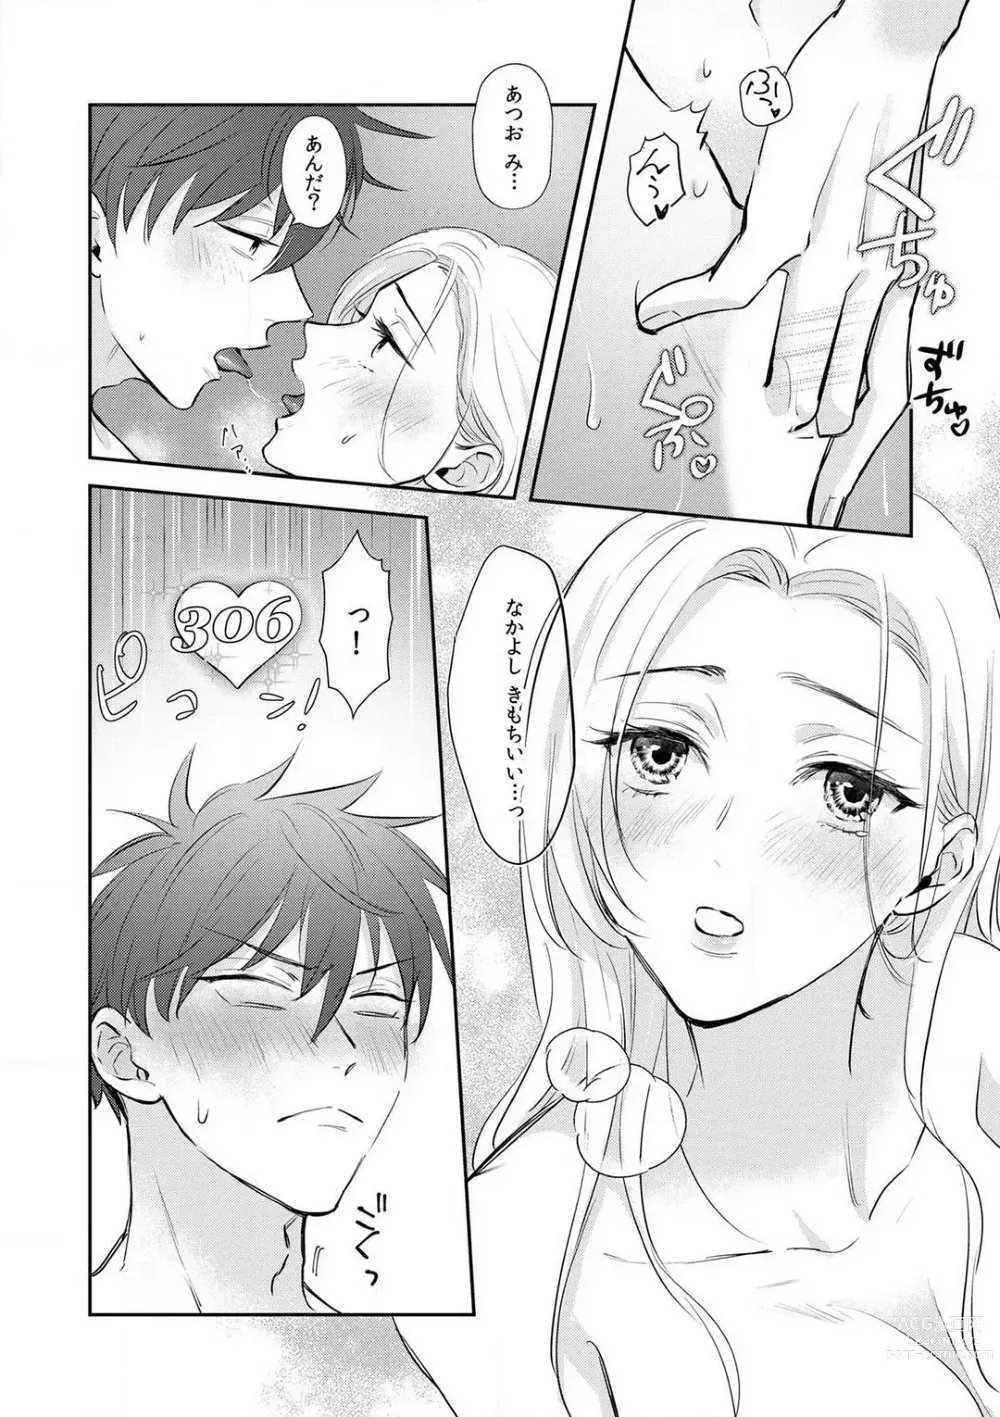 Page 40 of manga Taiikukaikei Osananajimi wa Sekaiichi no Dekiaidanshi 〜 Zen Jinrui no Kōkan-do ga Aru hi Mieta Rikejo no Watashi~Chp.1-2